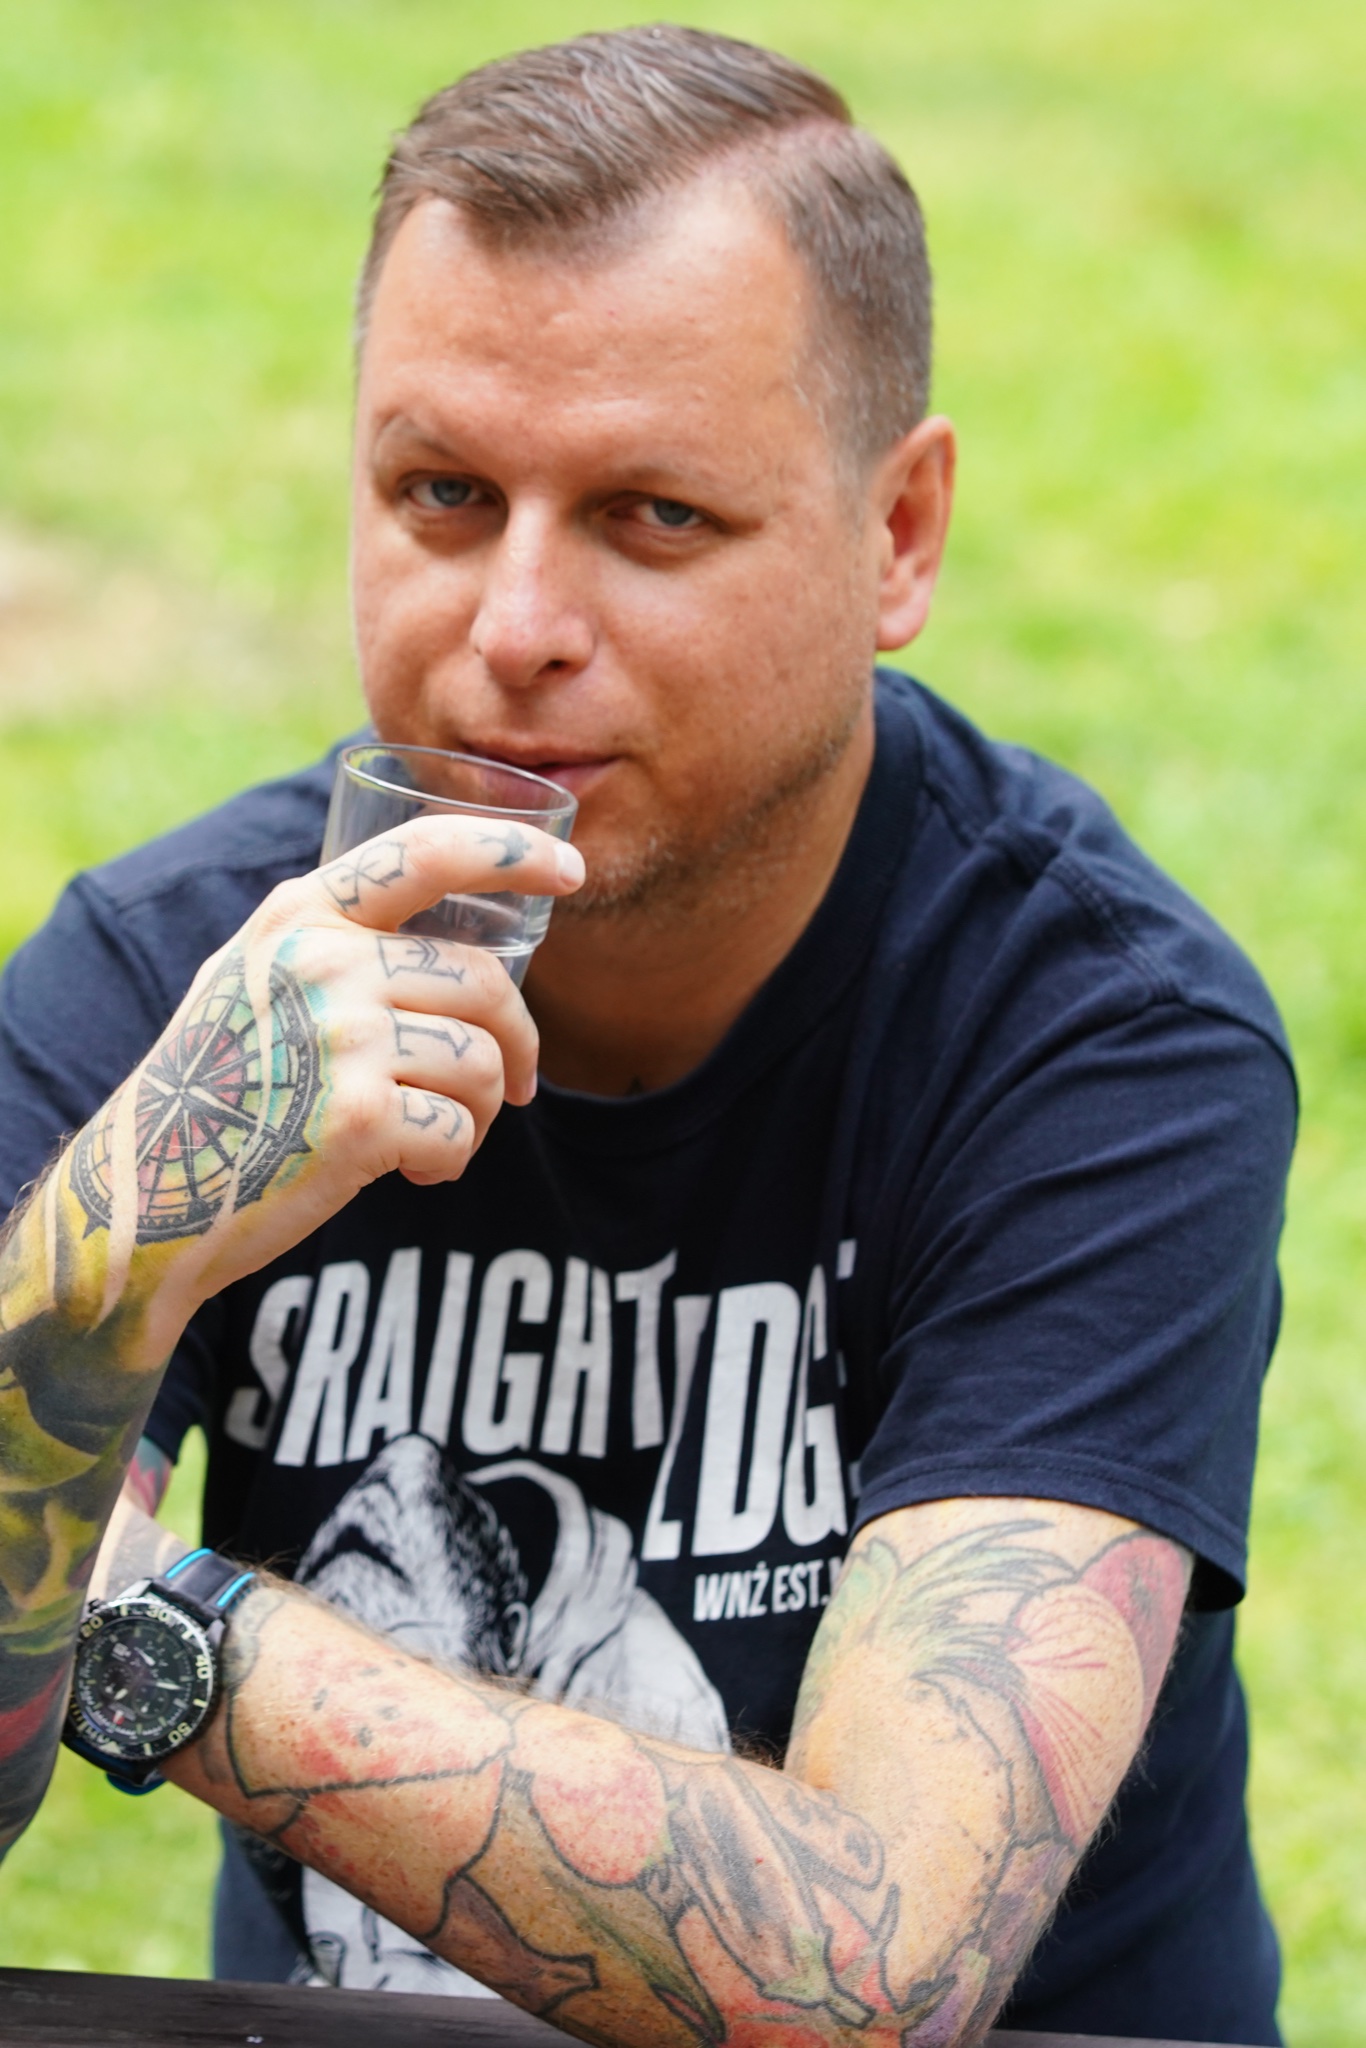 Daniel Jaroć trzyma szklankę przy twarzy. Na rękach i dłoniach ma tatuaże.